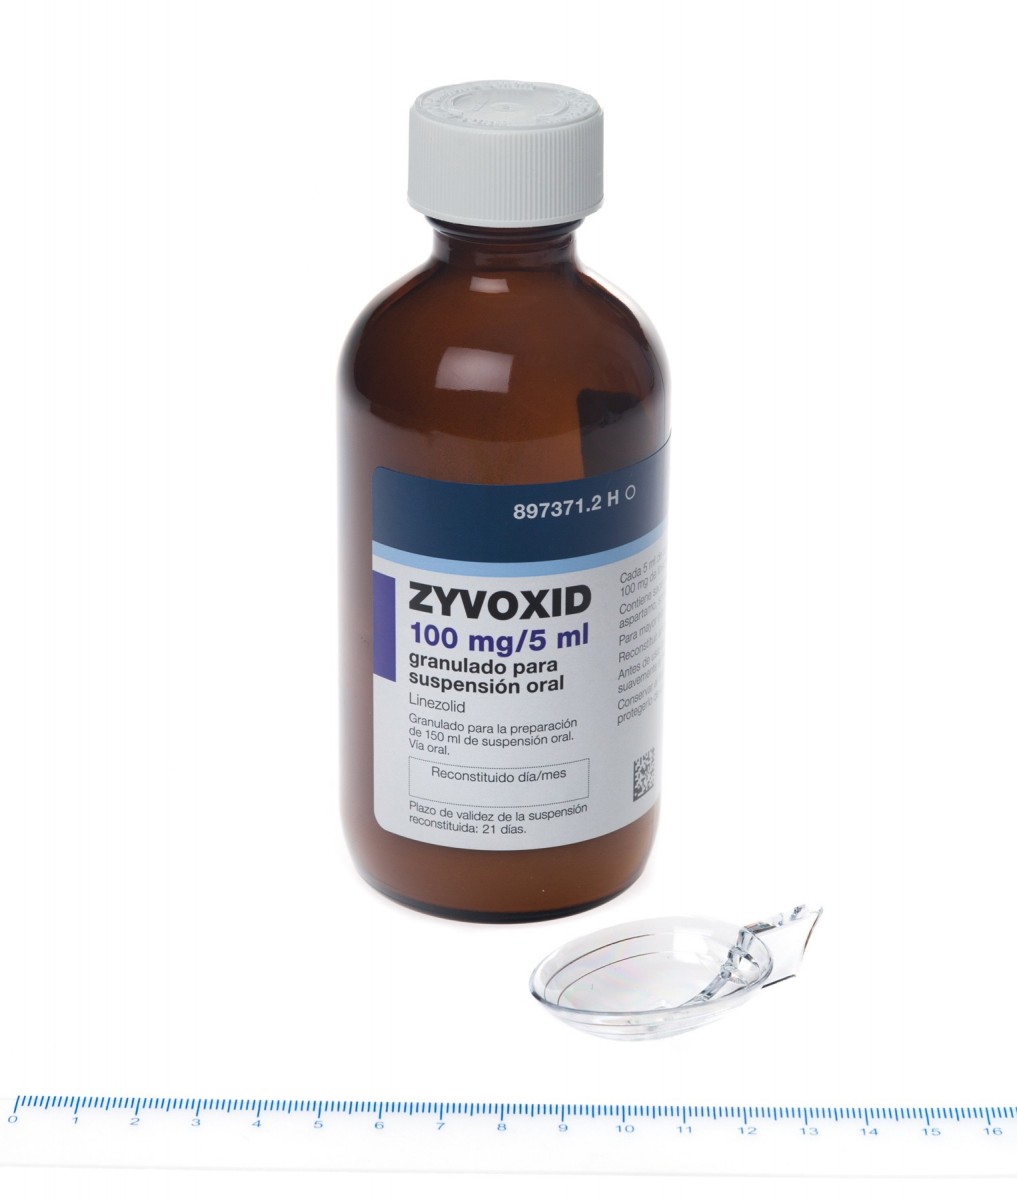 ZYVOXID 100 mg/5 ml GRANULADO PARA SUSPENSION ORAL, 1 frasco de 150 ml fotografía de la forma farmacéutica.